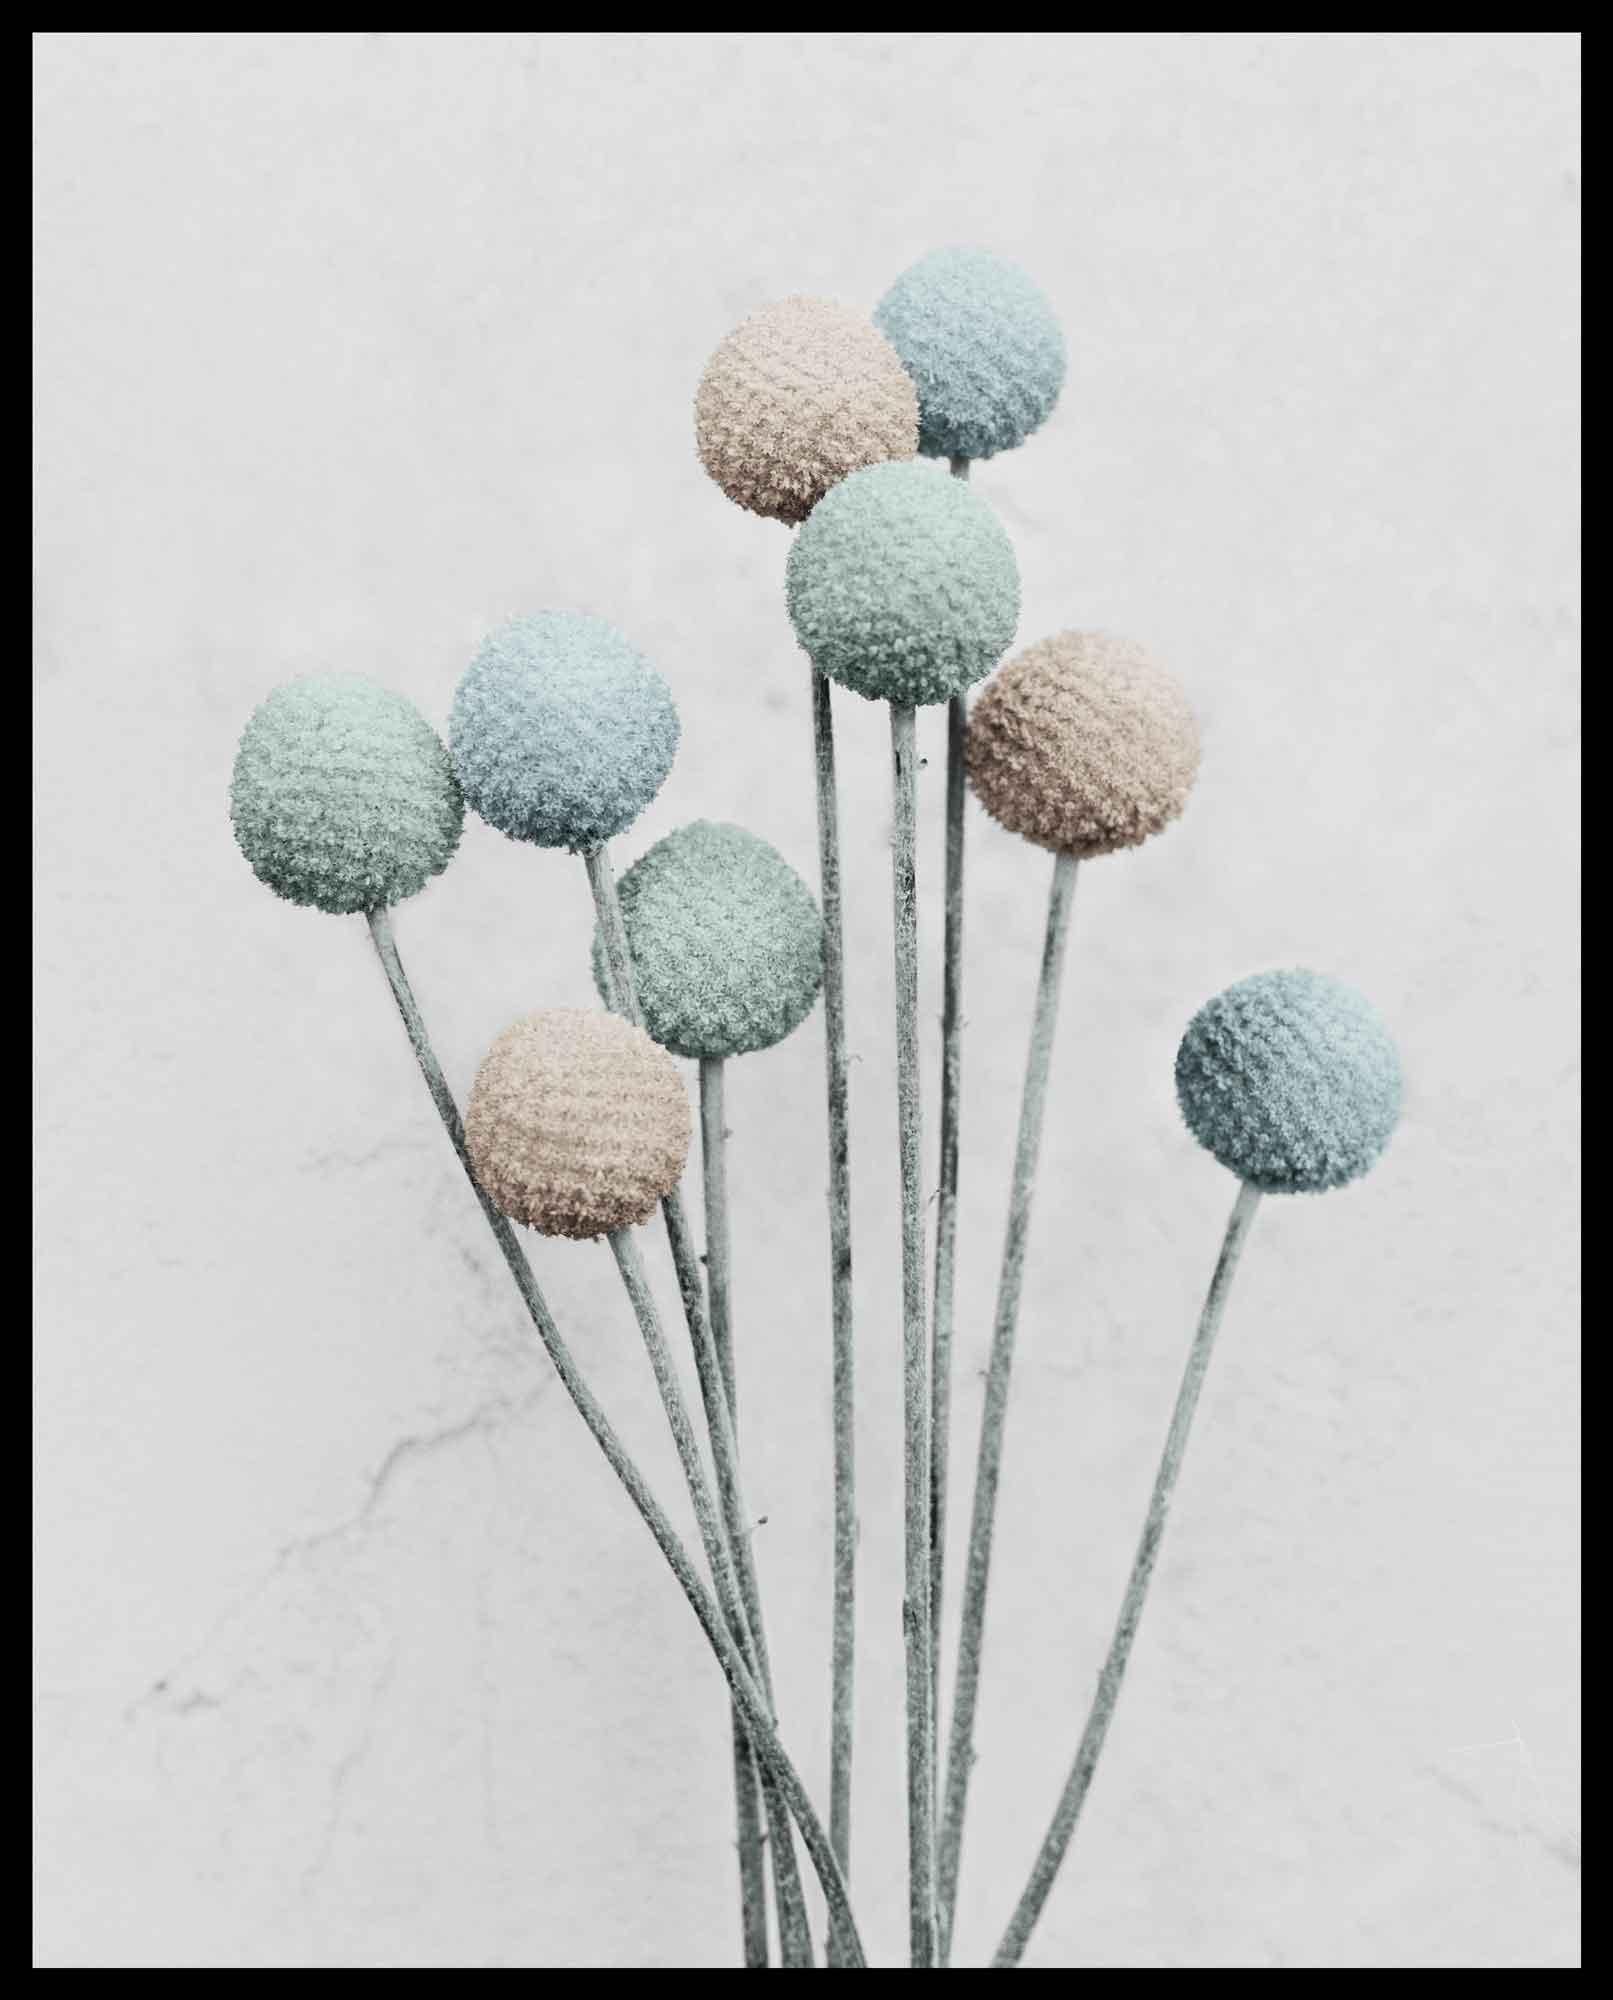 Botanica #20 (Craspedia) - Gray Color Photograph by Vee Speers